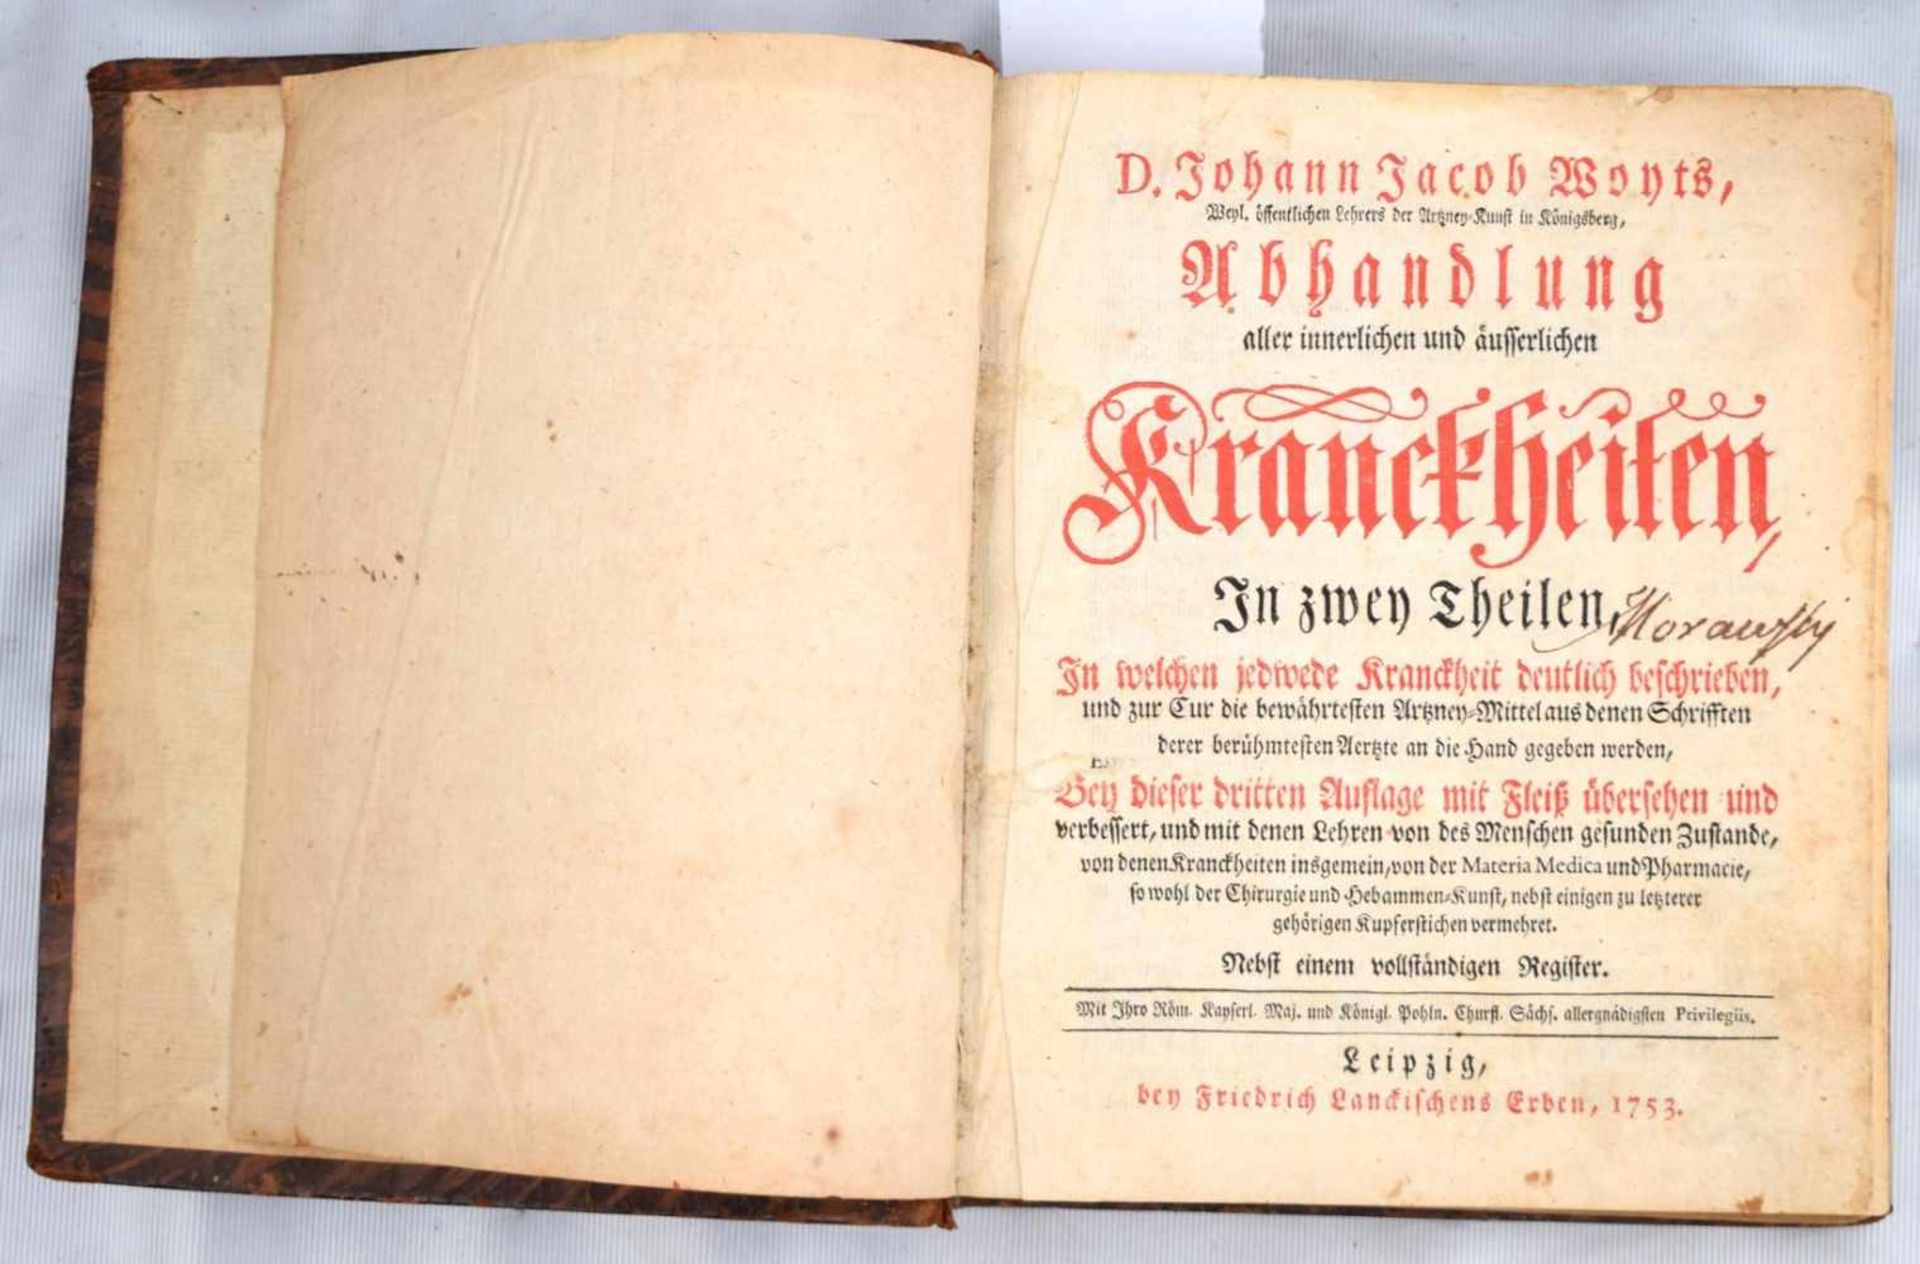 BuchAbhandlungen aller innerlichen und äußerlichen Krankheiten, Leipzig, 1773